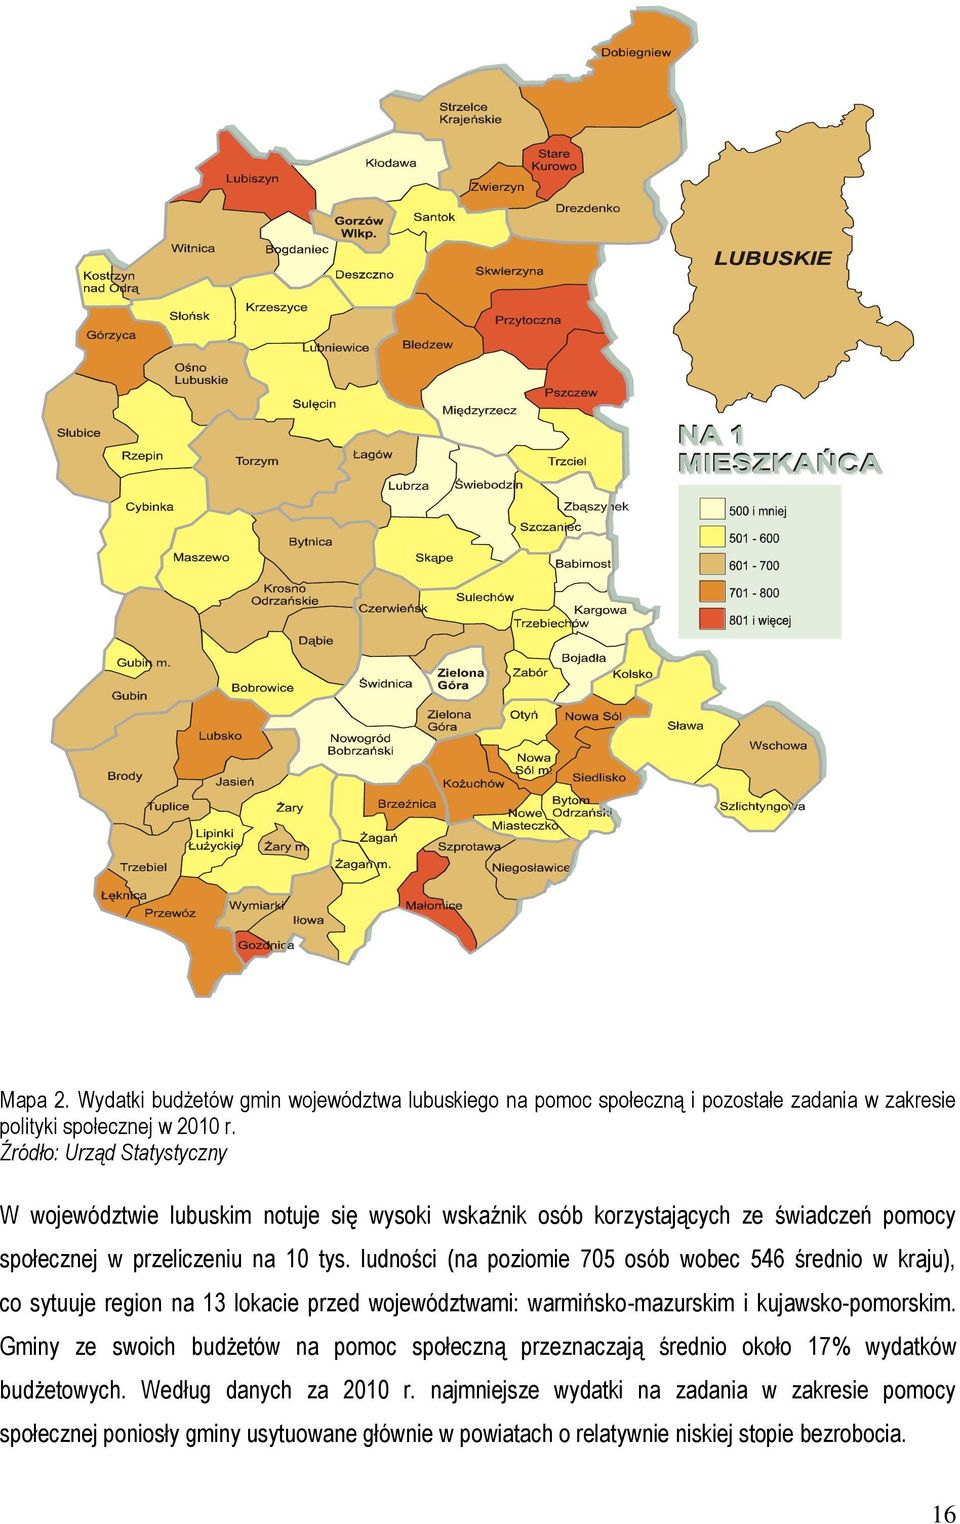 ludności (na poziomie 705 osób wobec 546 średnio w kraju), co sytuuje region na 13 lokacie przed województwami: warmińsko-mazurskim i kujawsko-pomorskim.